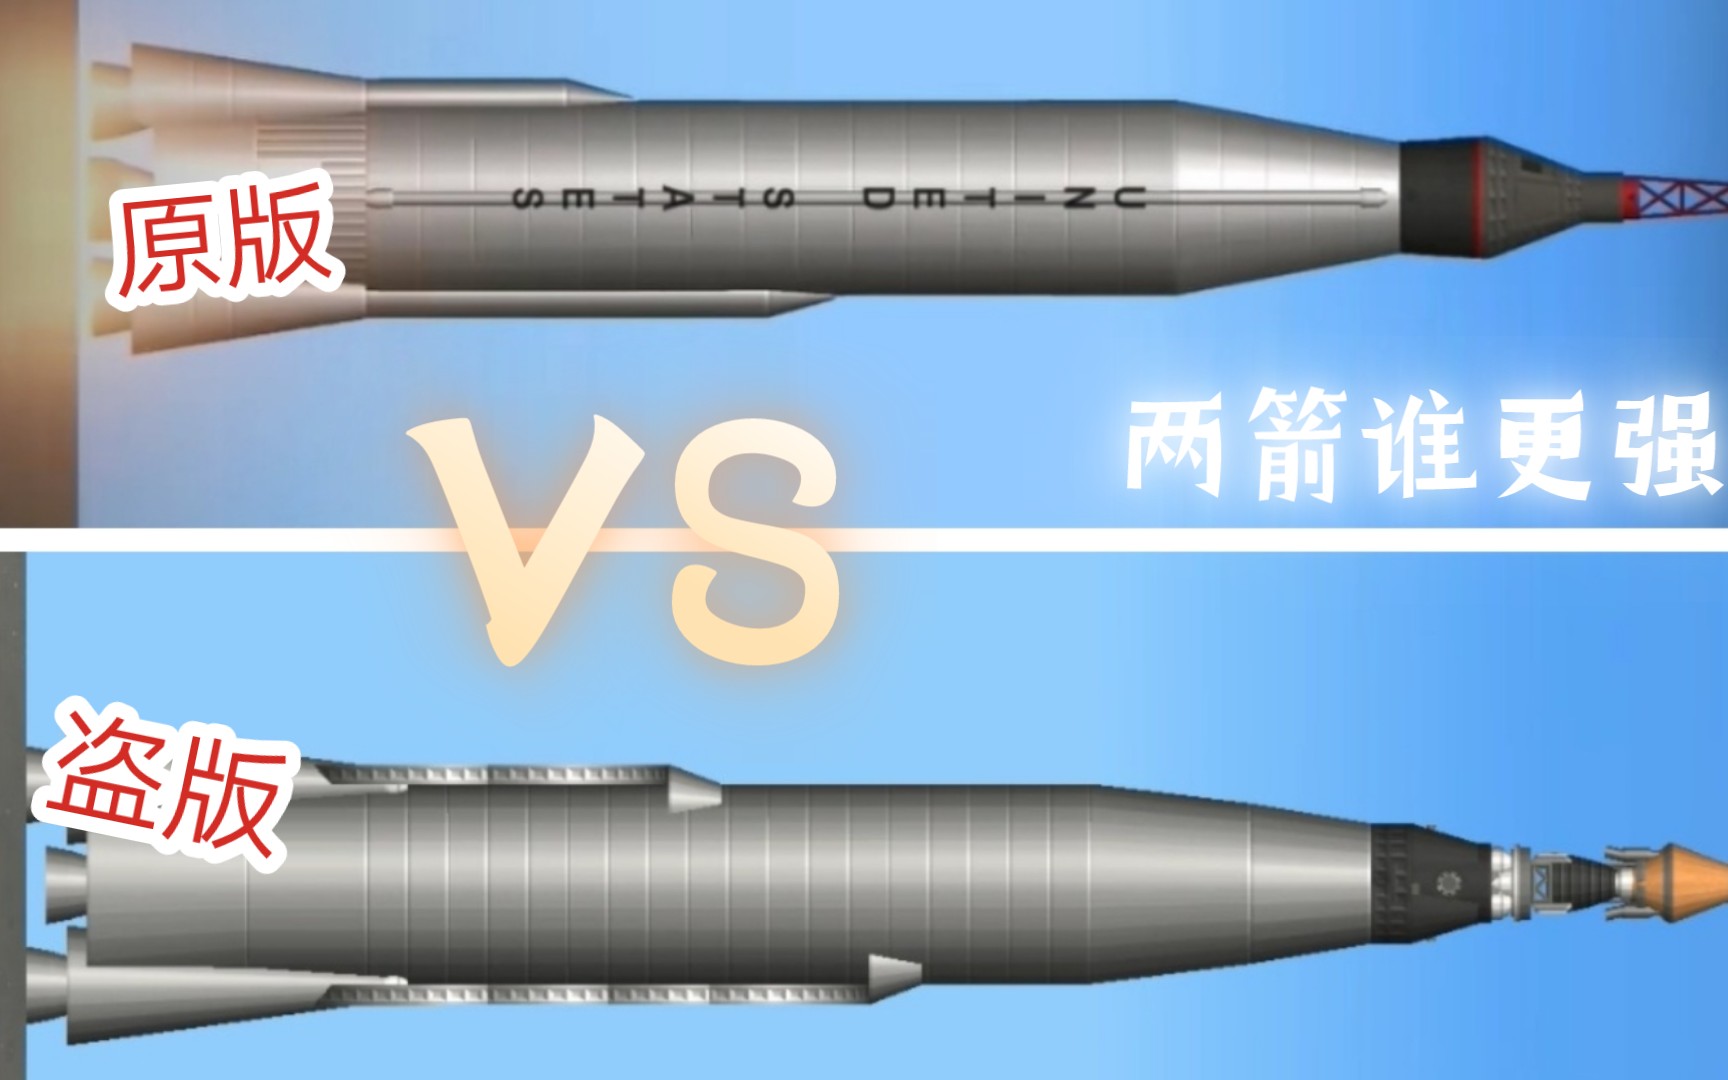 原版的火箭 VS 盗版的火箭              谁更强?